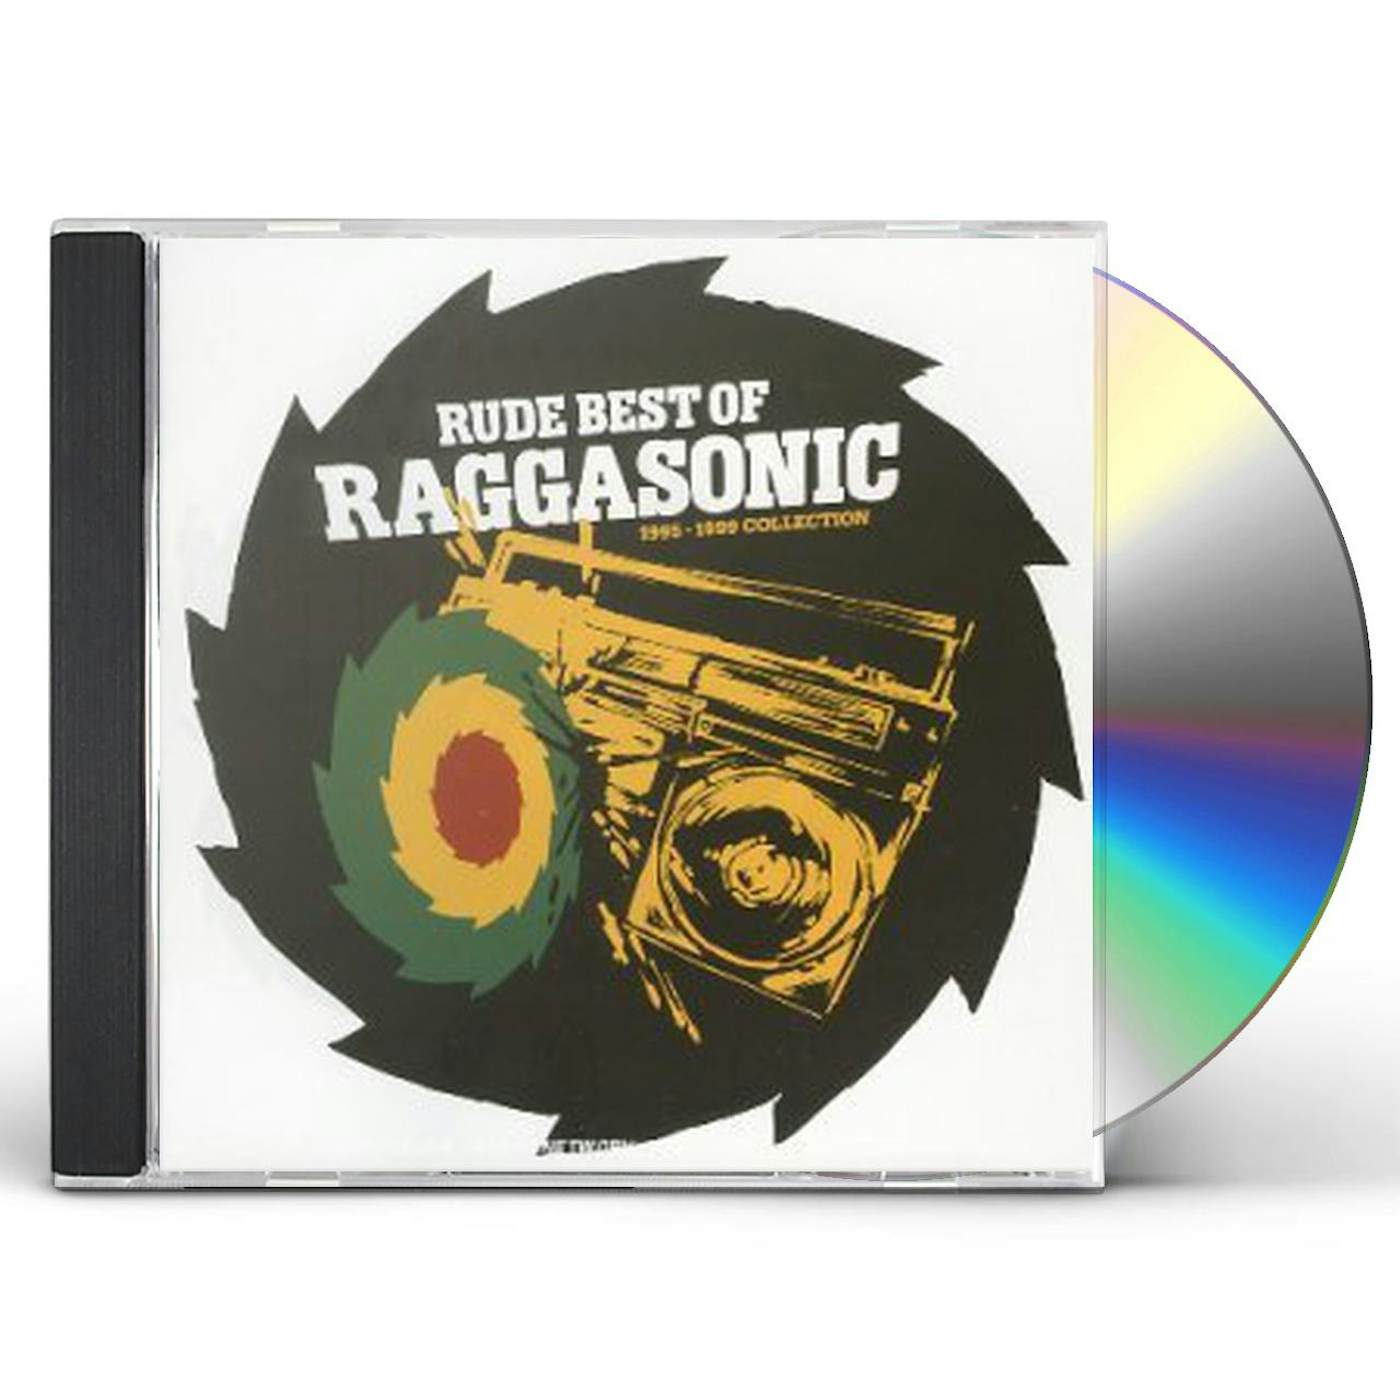 Raggasonic RUDE BEST OF (95-99) CD